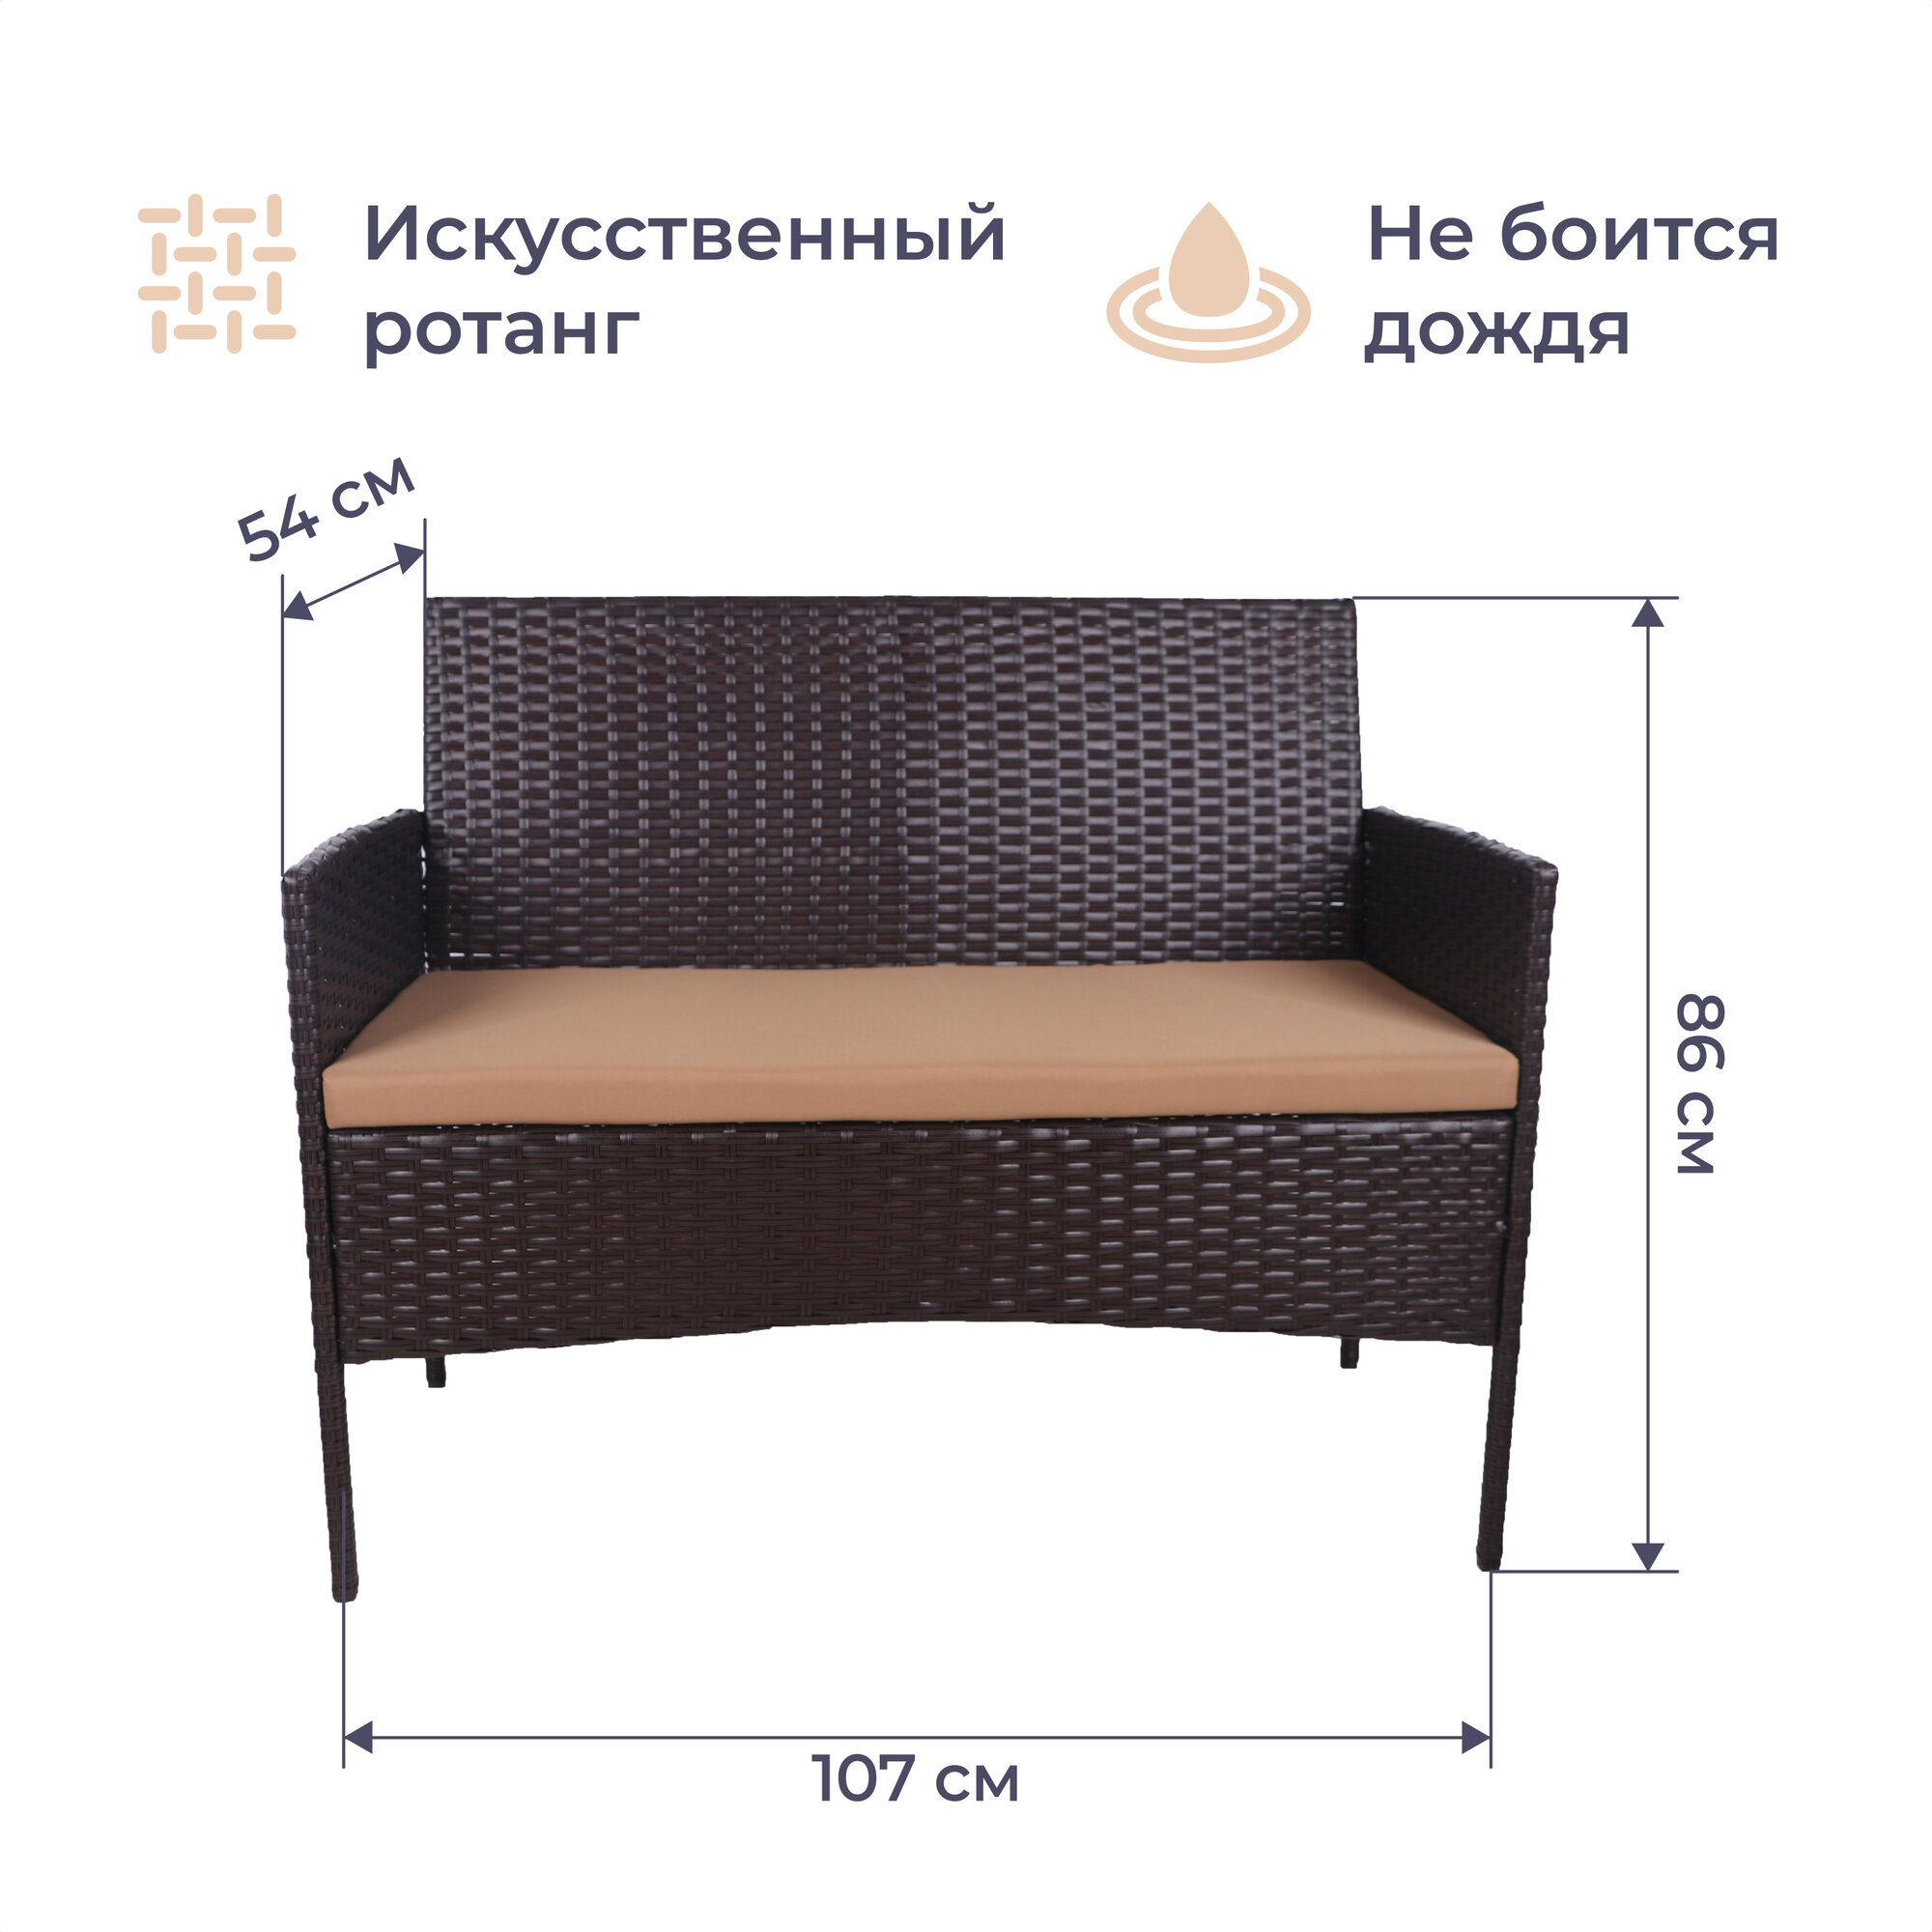 Комплект мебели Homsly, искуственный ротанг, диван, 2 кресла, стол, стальной каркас, цвет "Кофе", LFSR 211 - фотография № 3